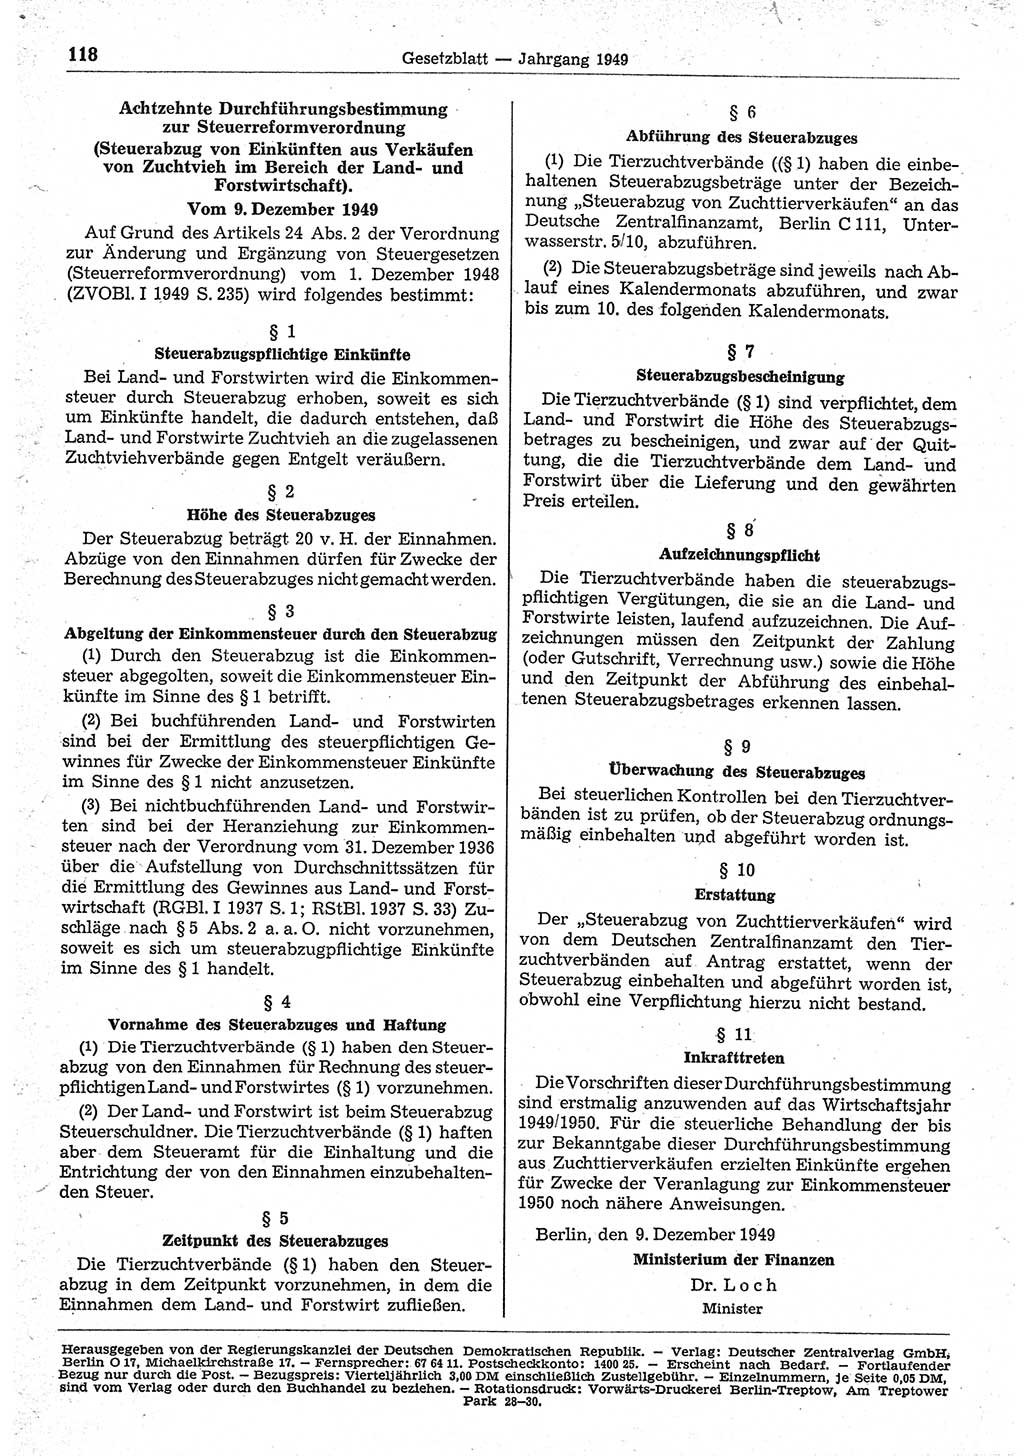 Gesetzblatt (GBl.) der Deutschen Demokratischen Republik (DDR) 1949, Seite 118 (GBl. DDR 1949, S. 118)